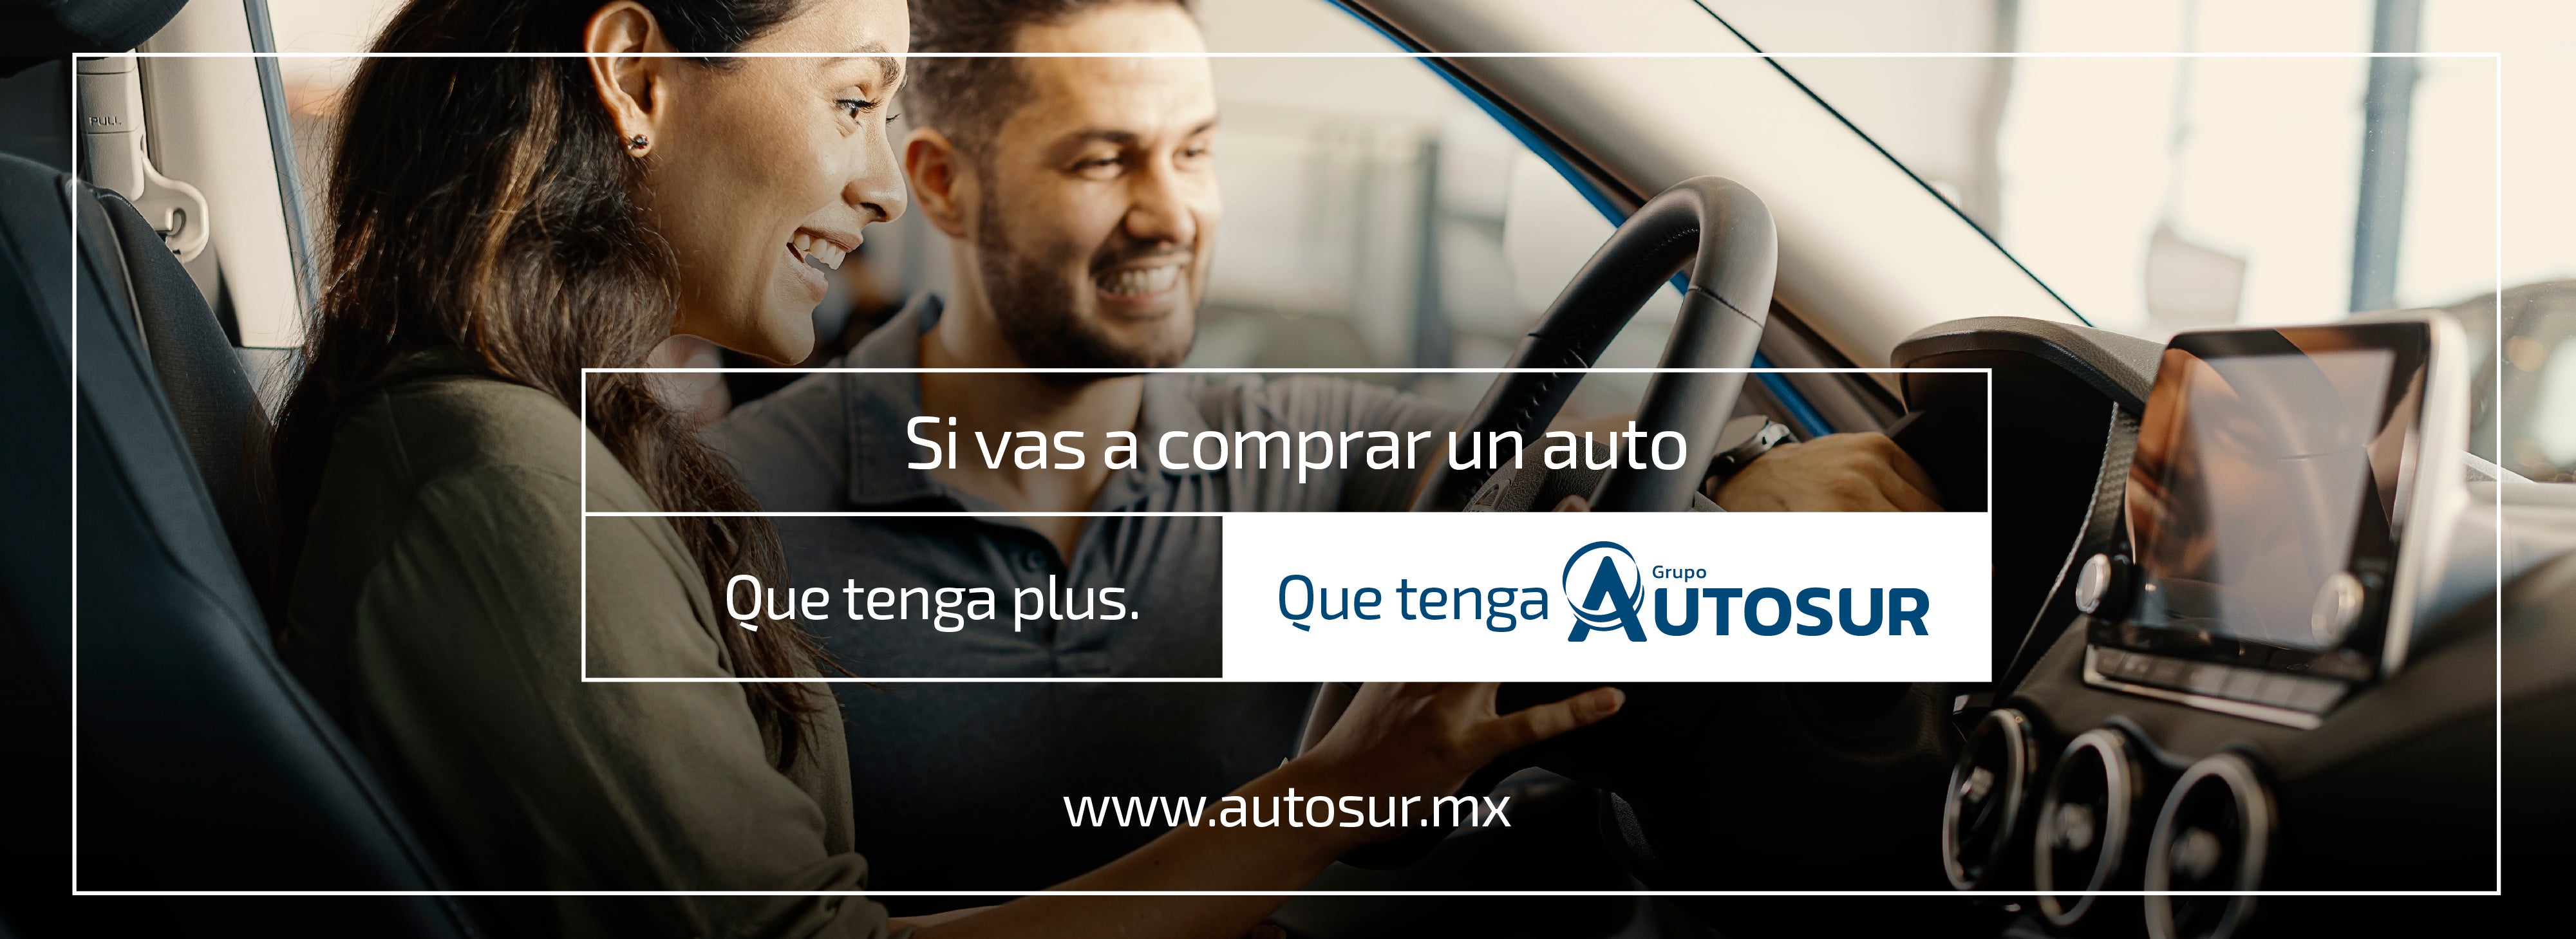 www.autosur.mx